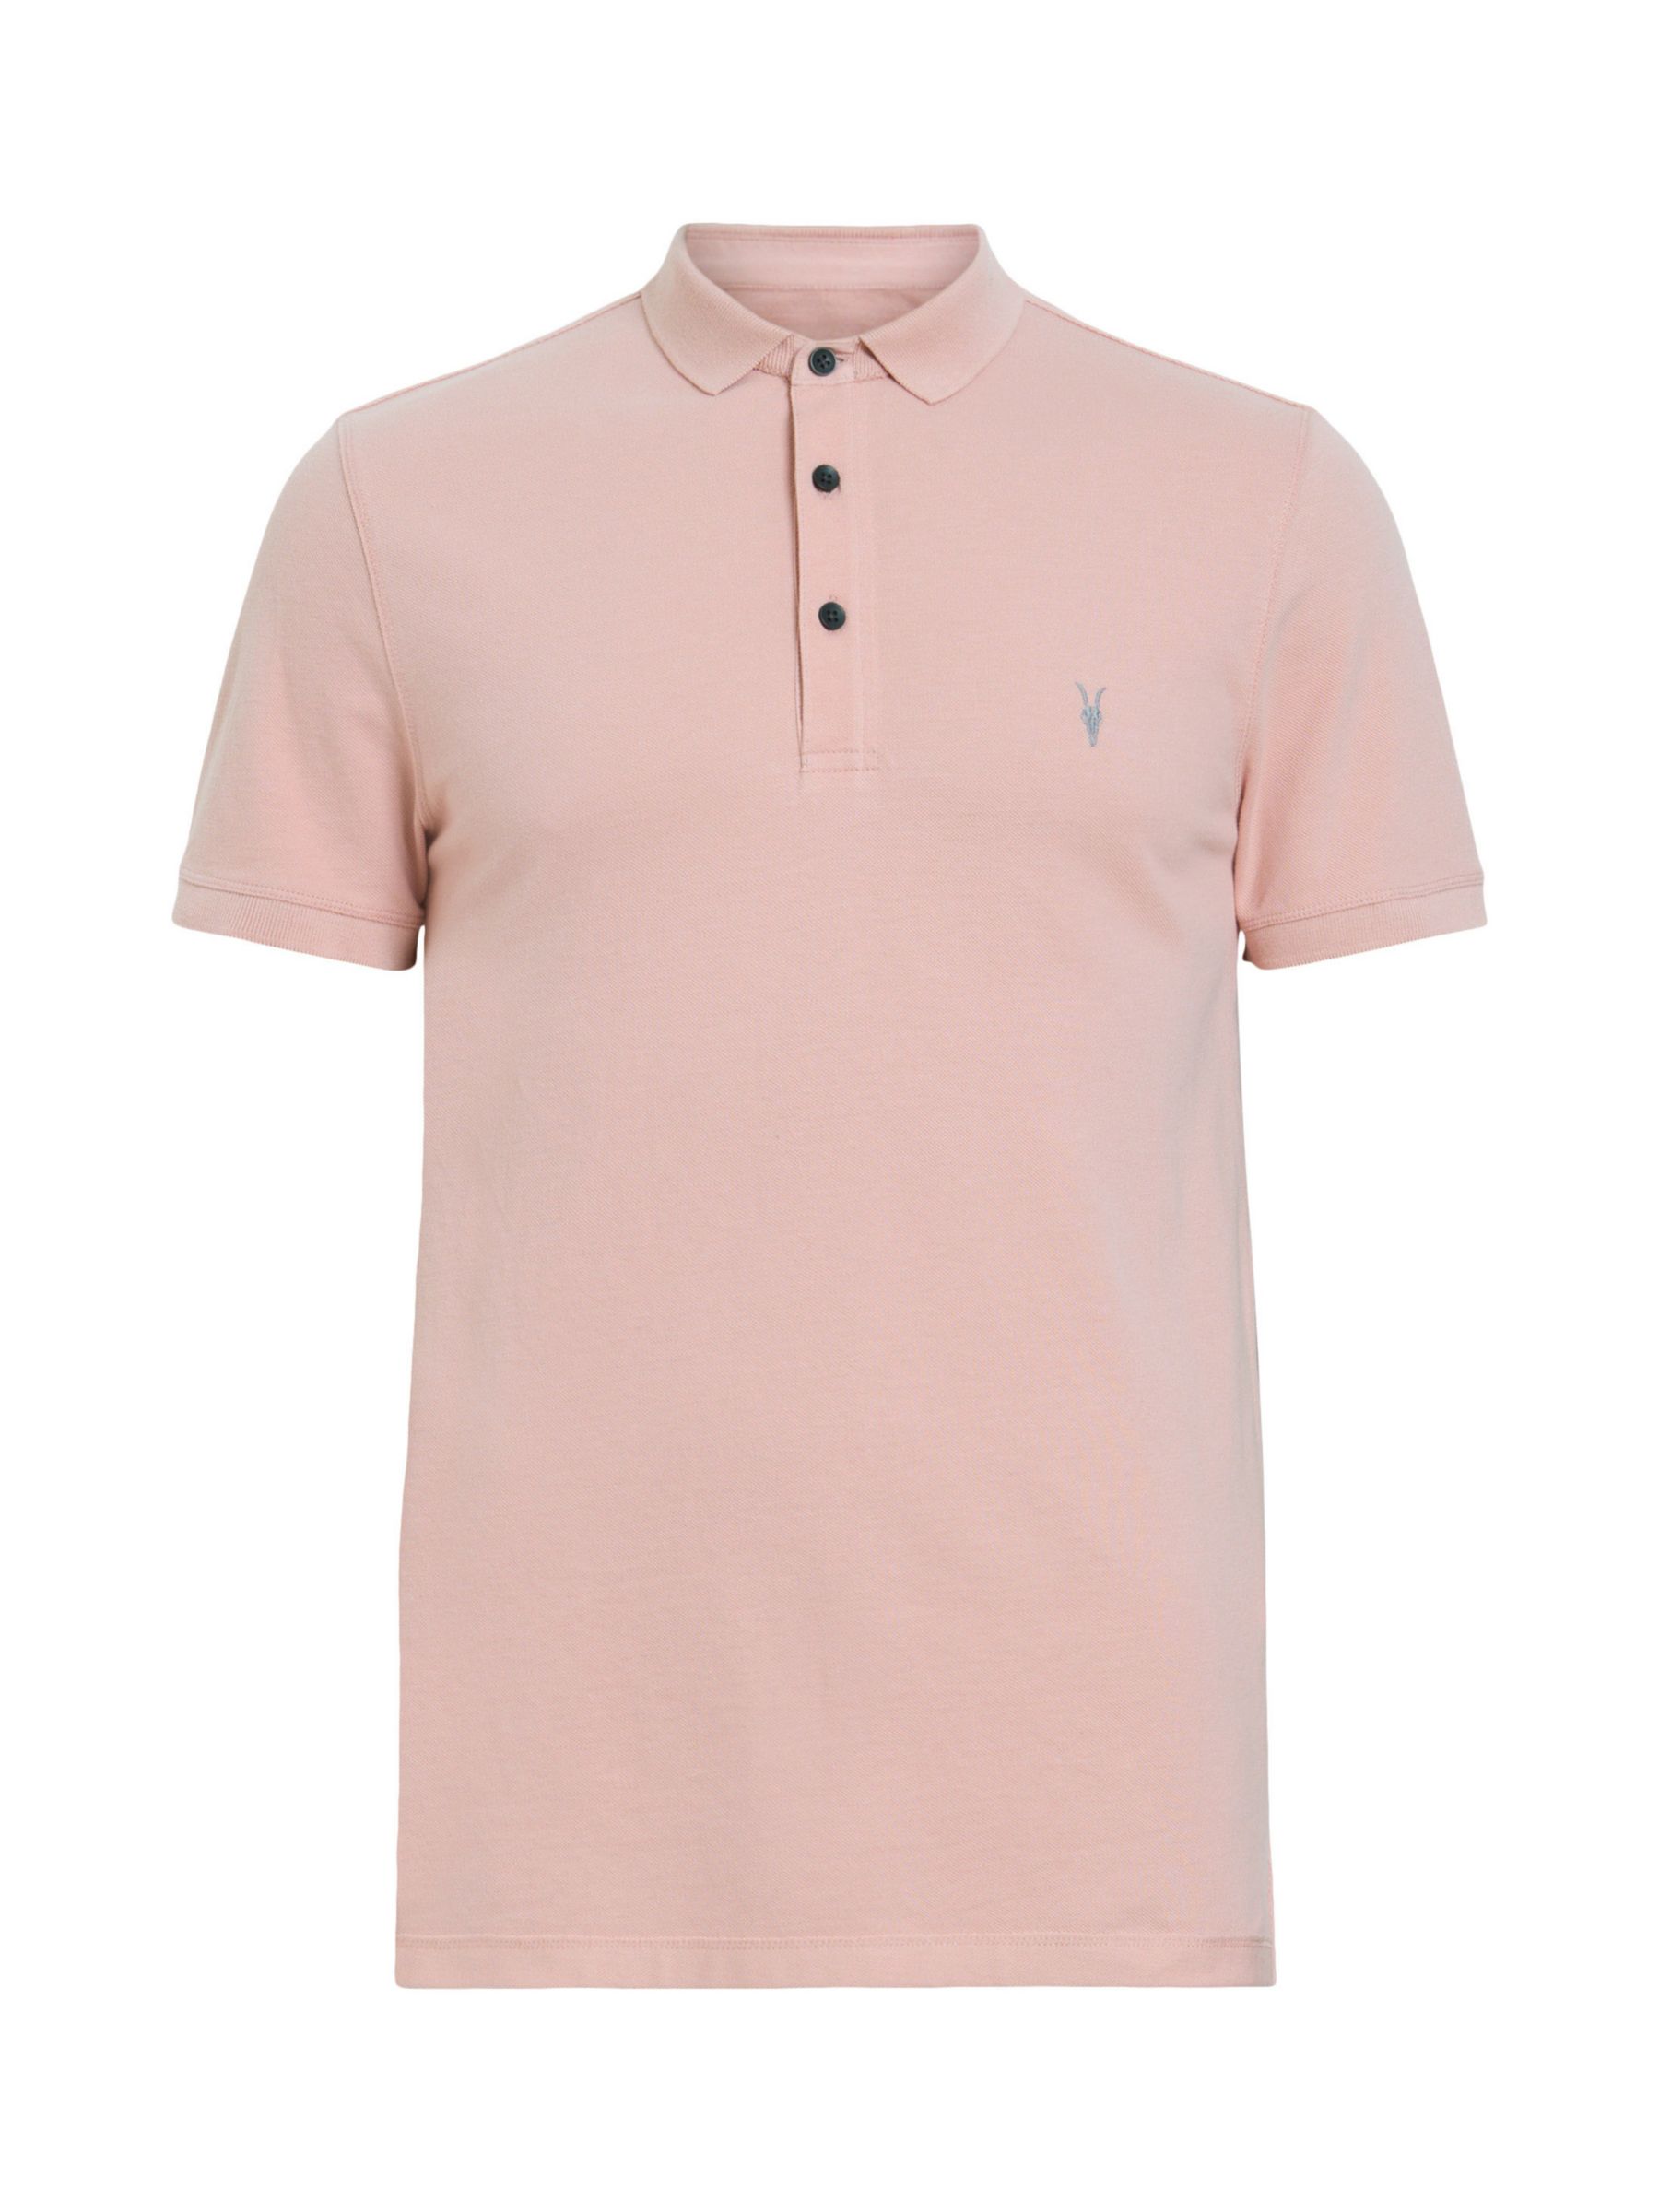 AllSaints Reform Organic Cotton Polo Shirt, Bramble Pink, L